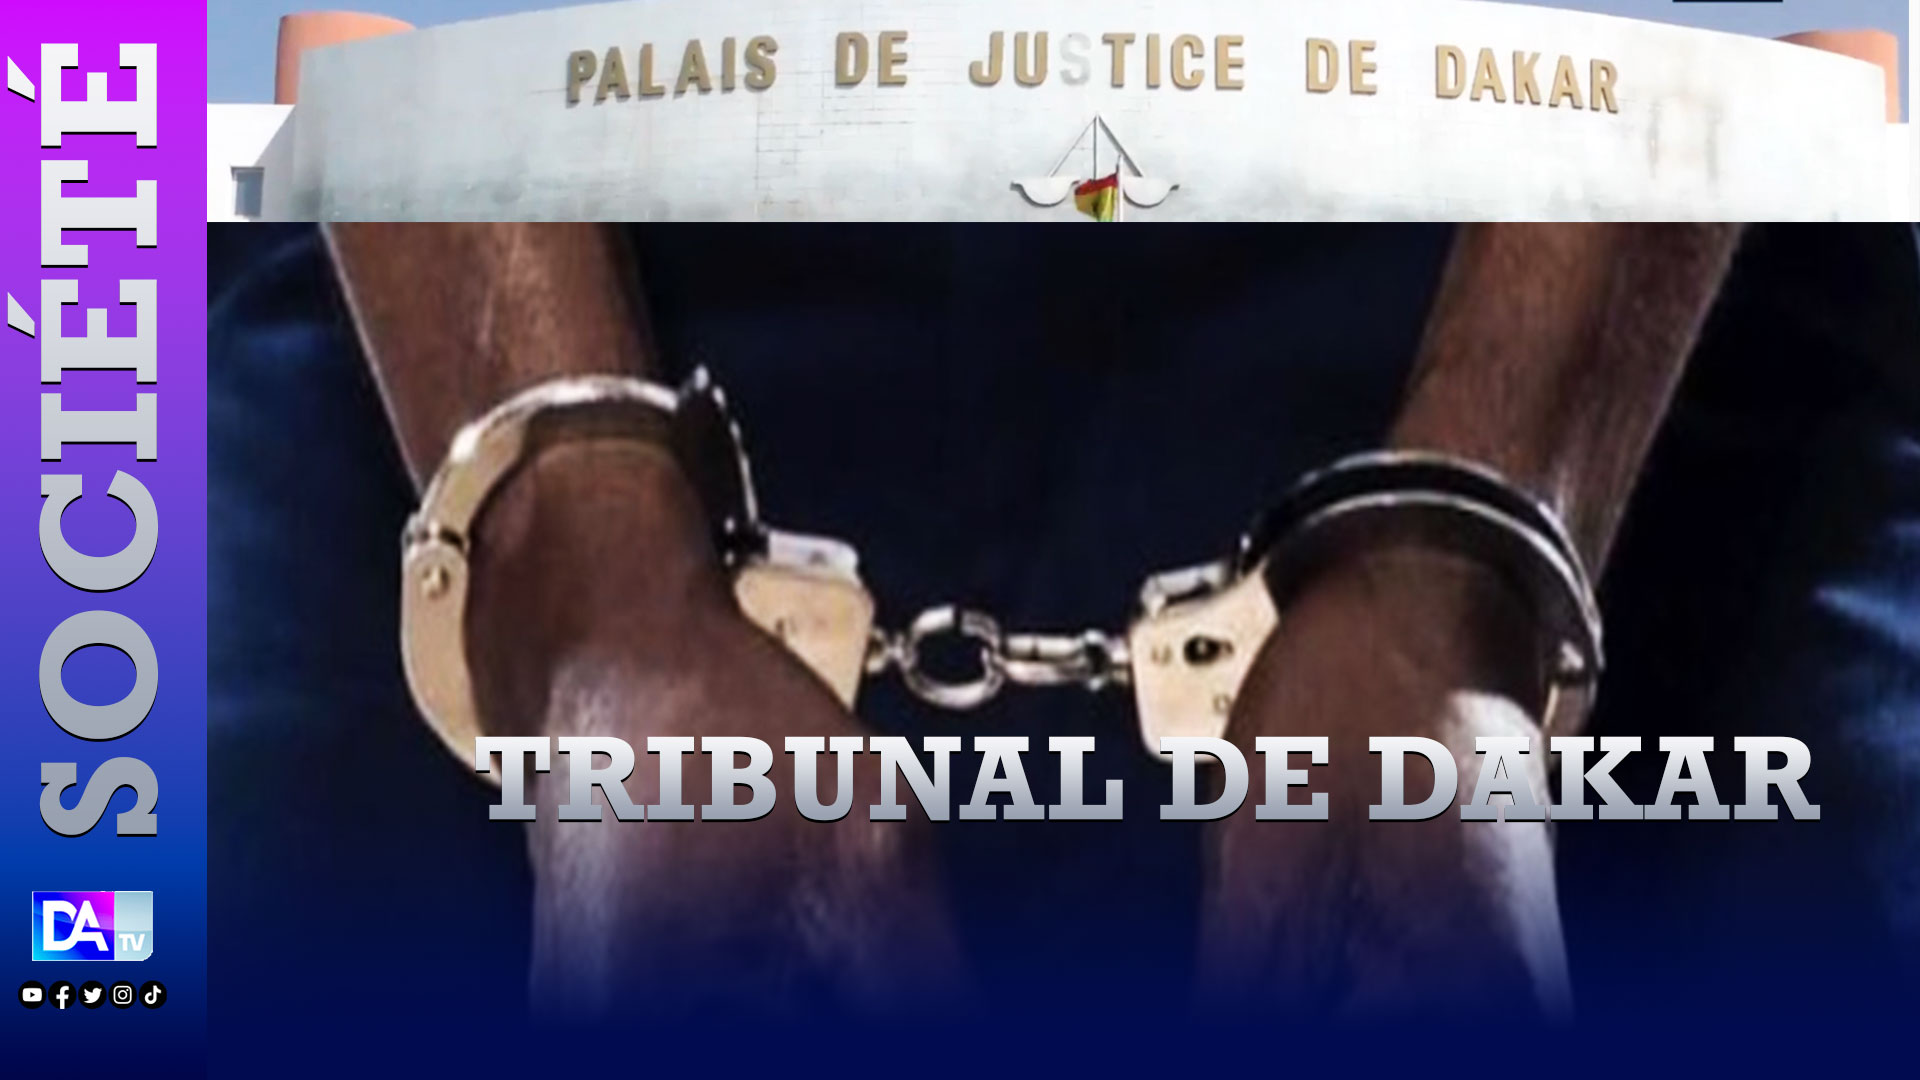 Venu légaliser des documents au niveau du tribunal de Dakar, M. Sarr en état d'ivresse, tabasse un magistrat